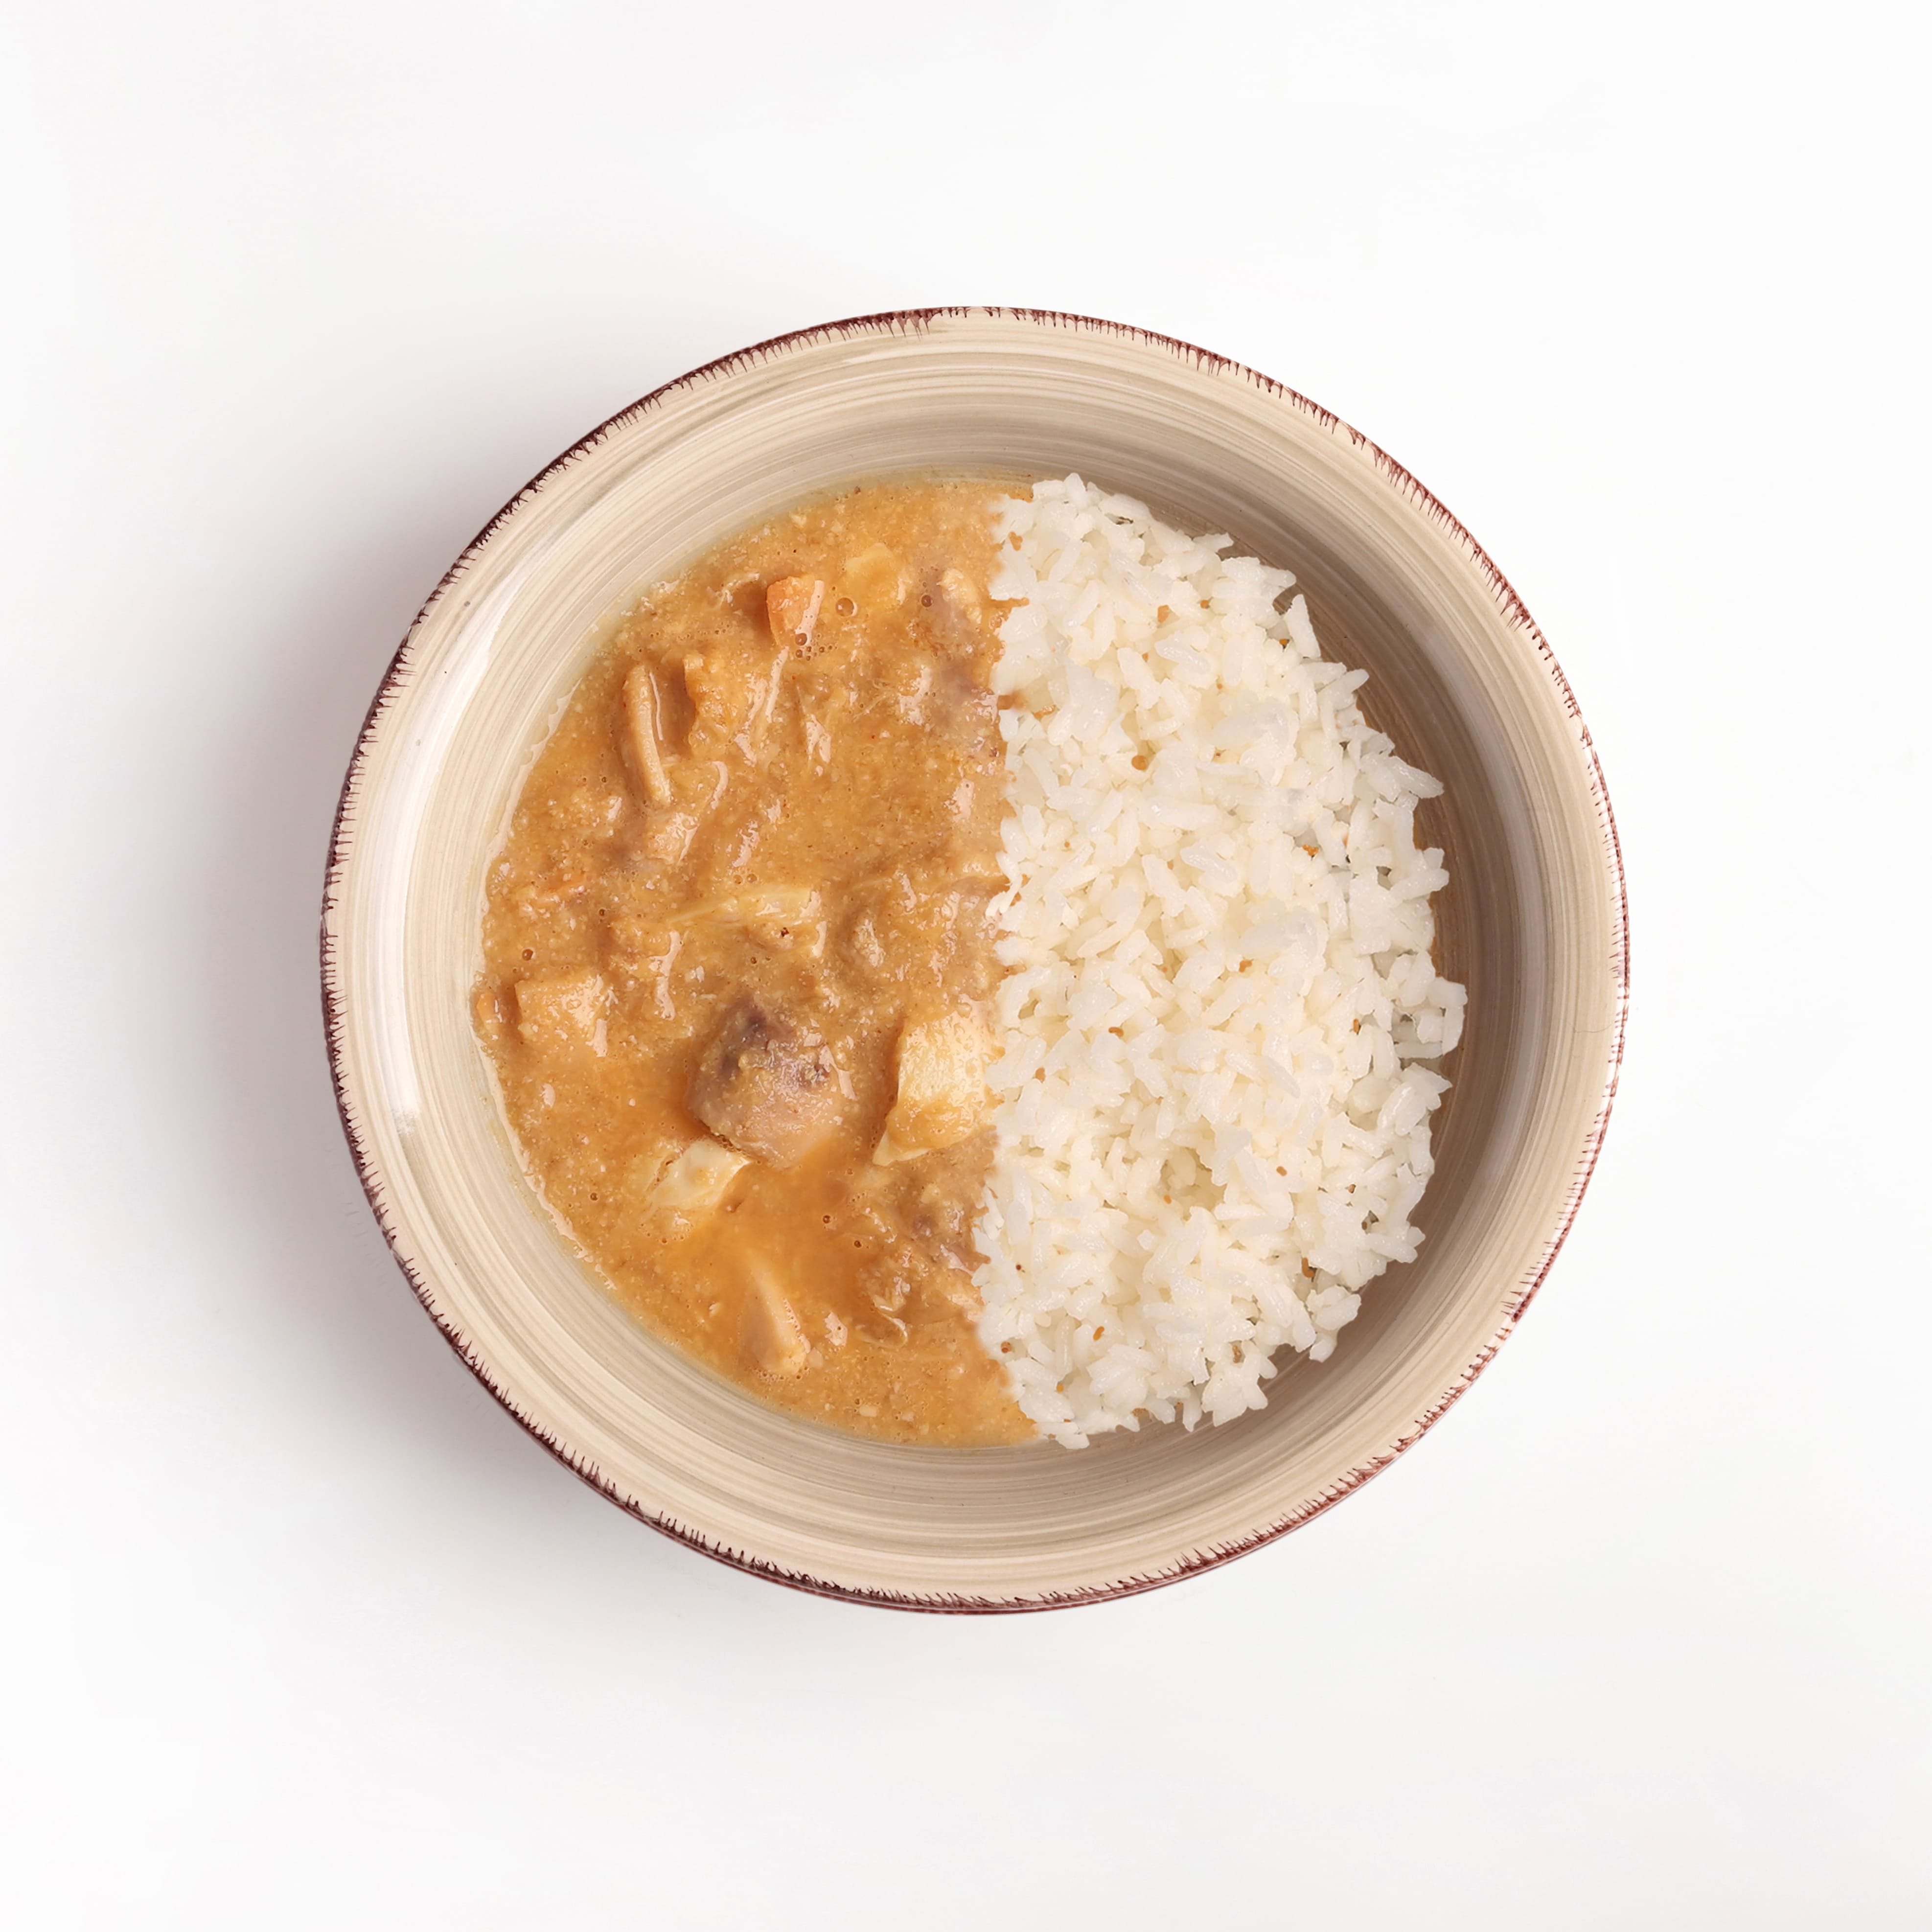 NUEVO FORMATO: Pollo pepitoria + arroz